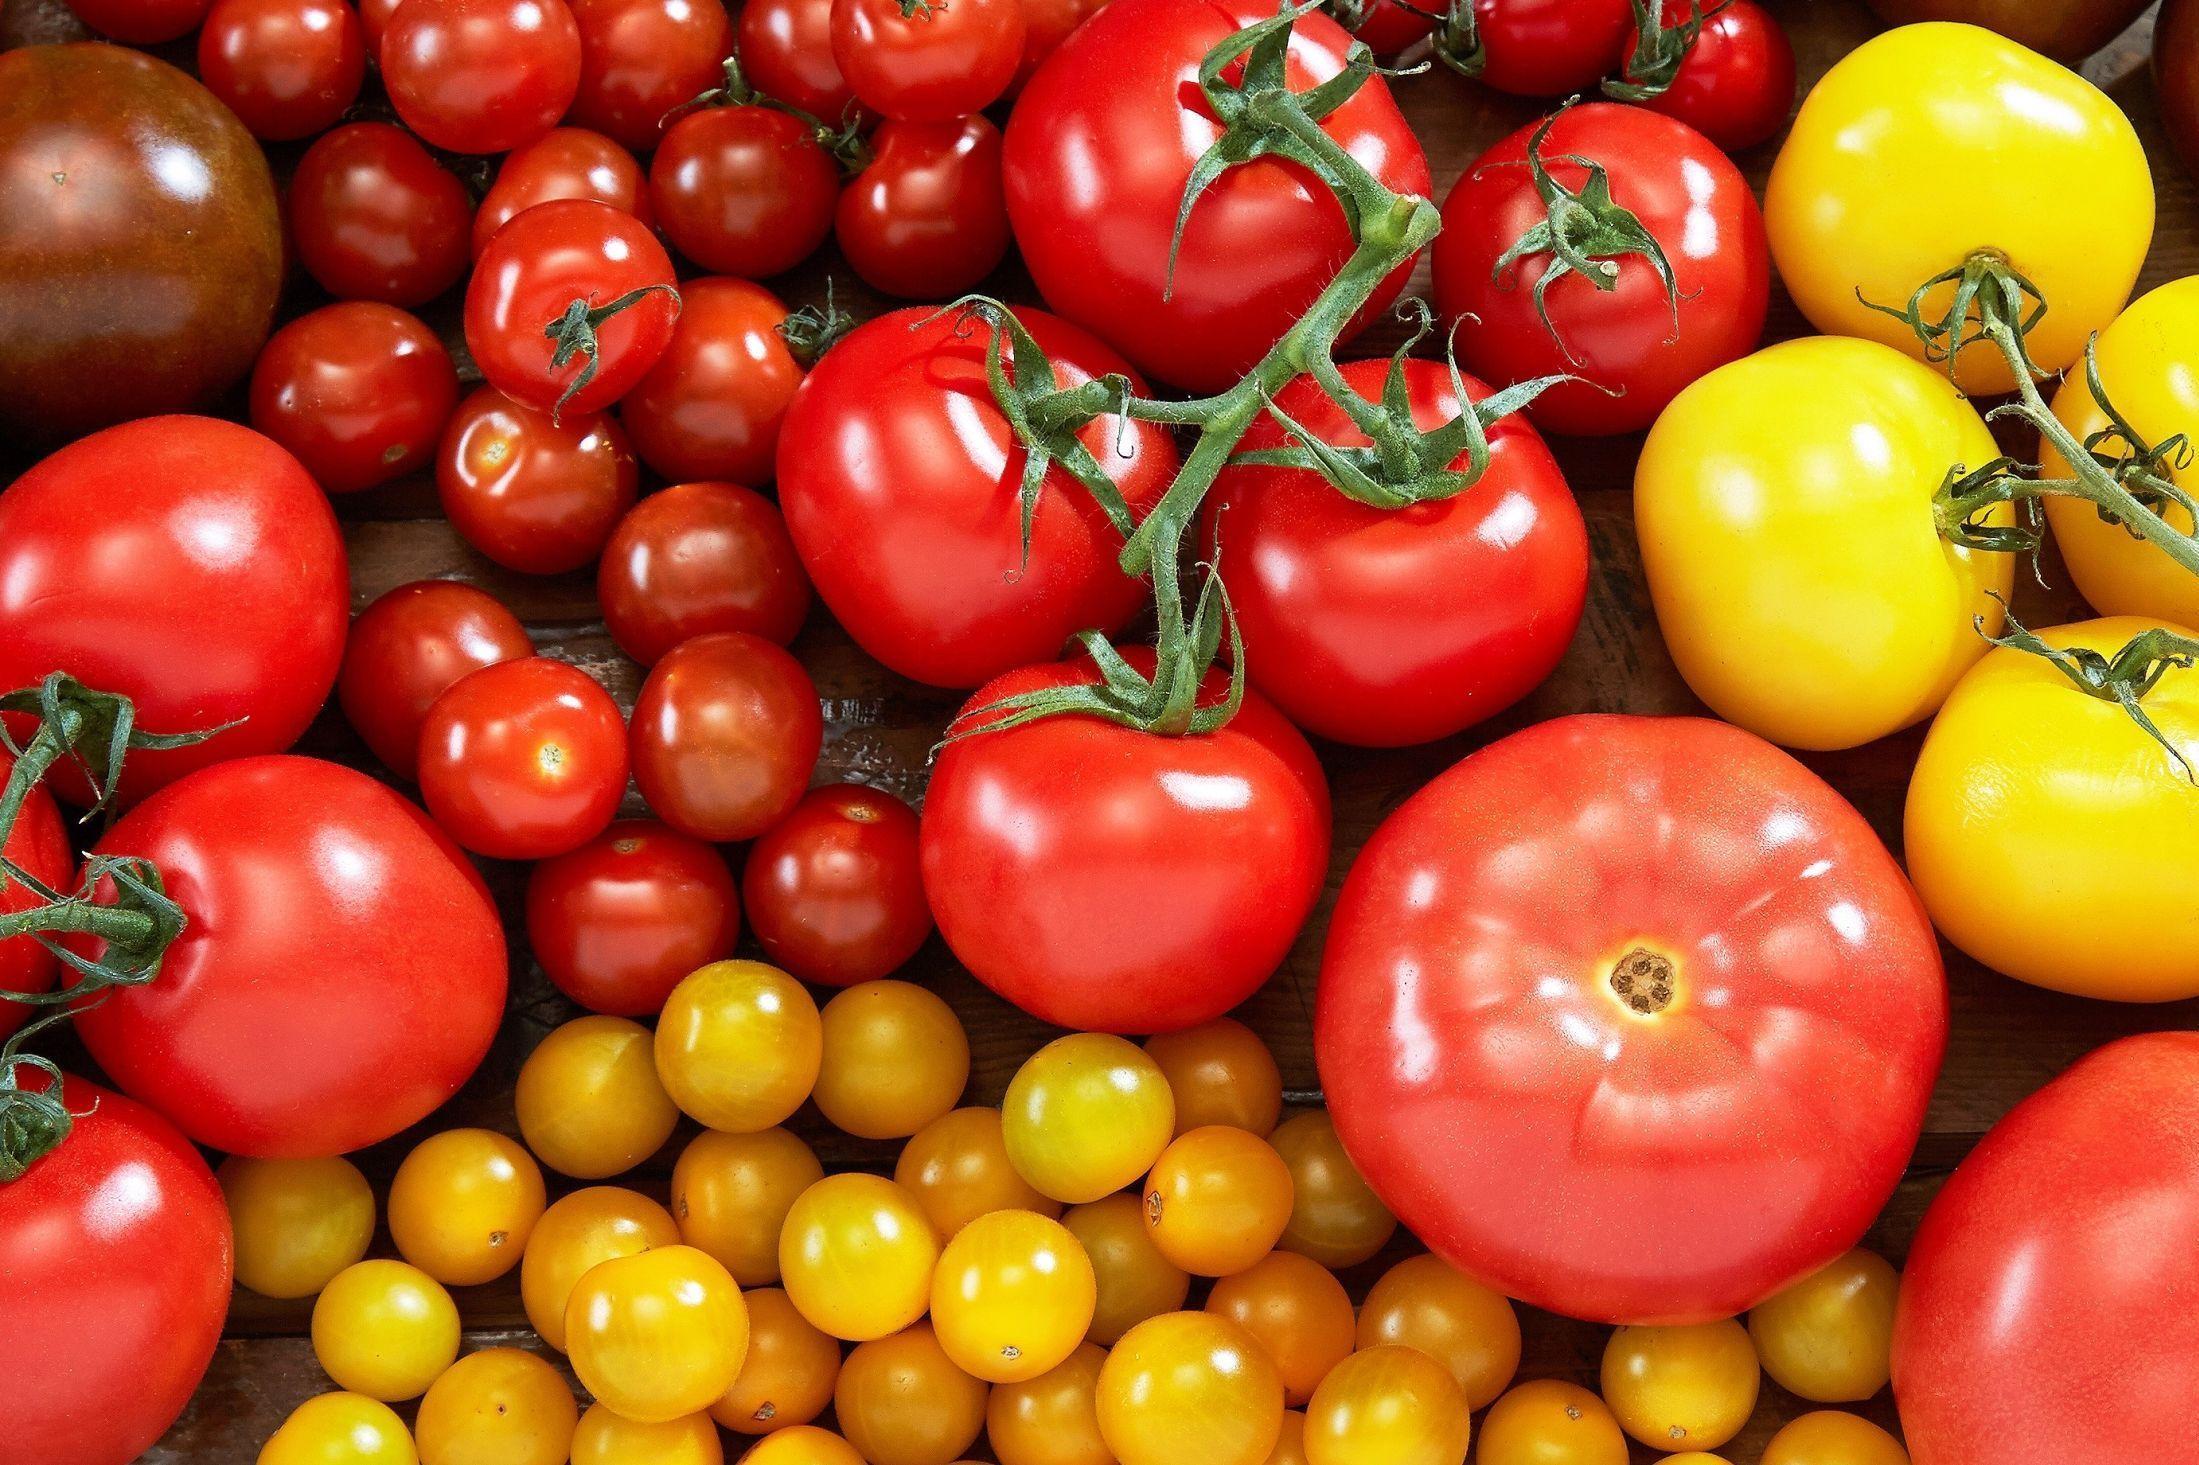 NORSKE: I dag har vi et stort utvalg av tomater i ulike størrelser og farger året rundt. En voksende andel er produsert i Norge. Foto: Synøve Dreyer/OFG